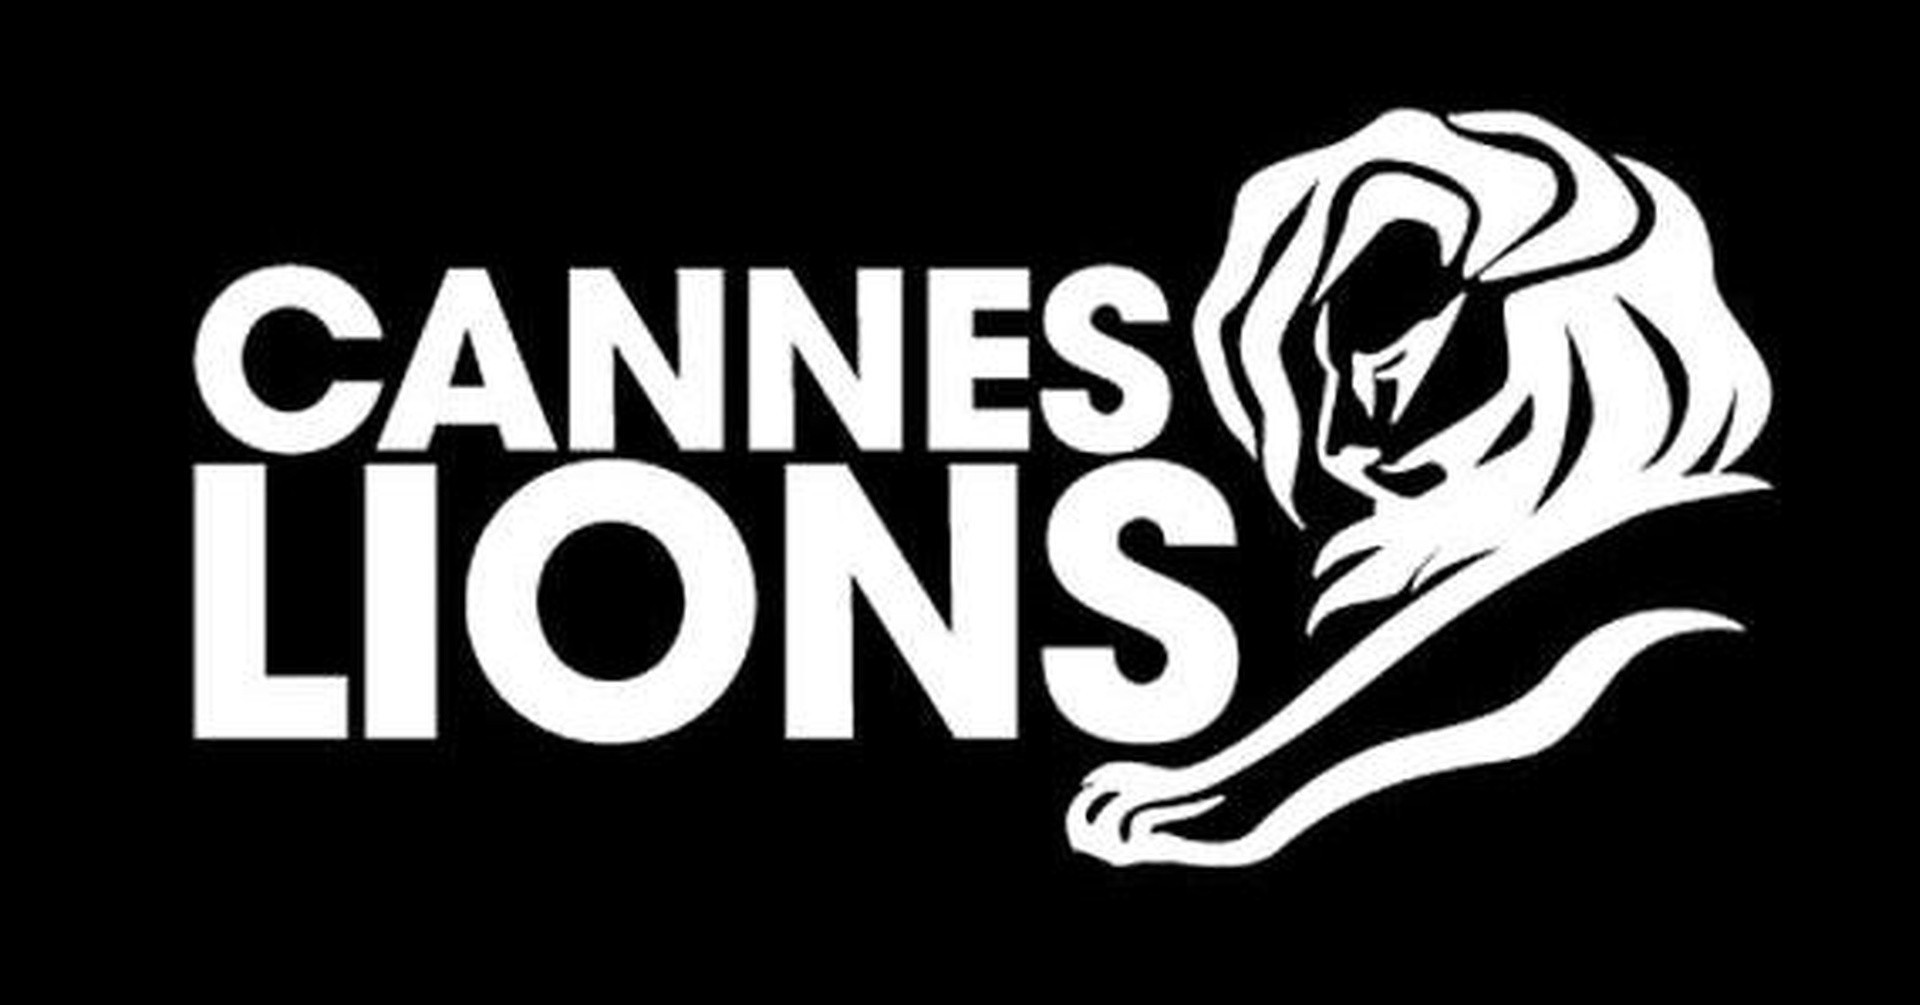 Lions Cannes